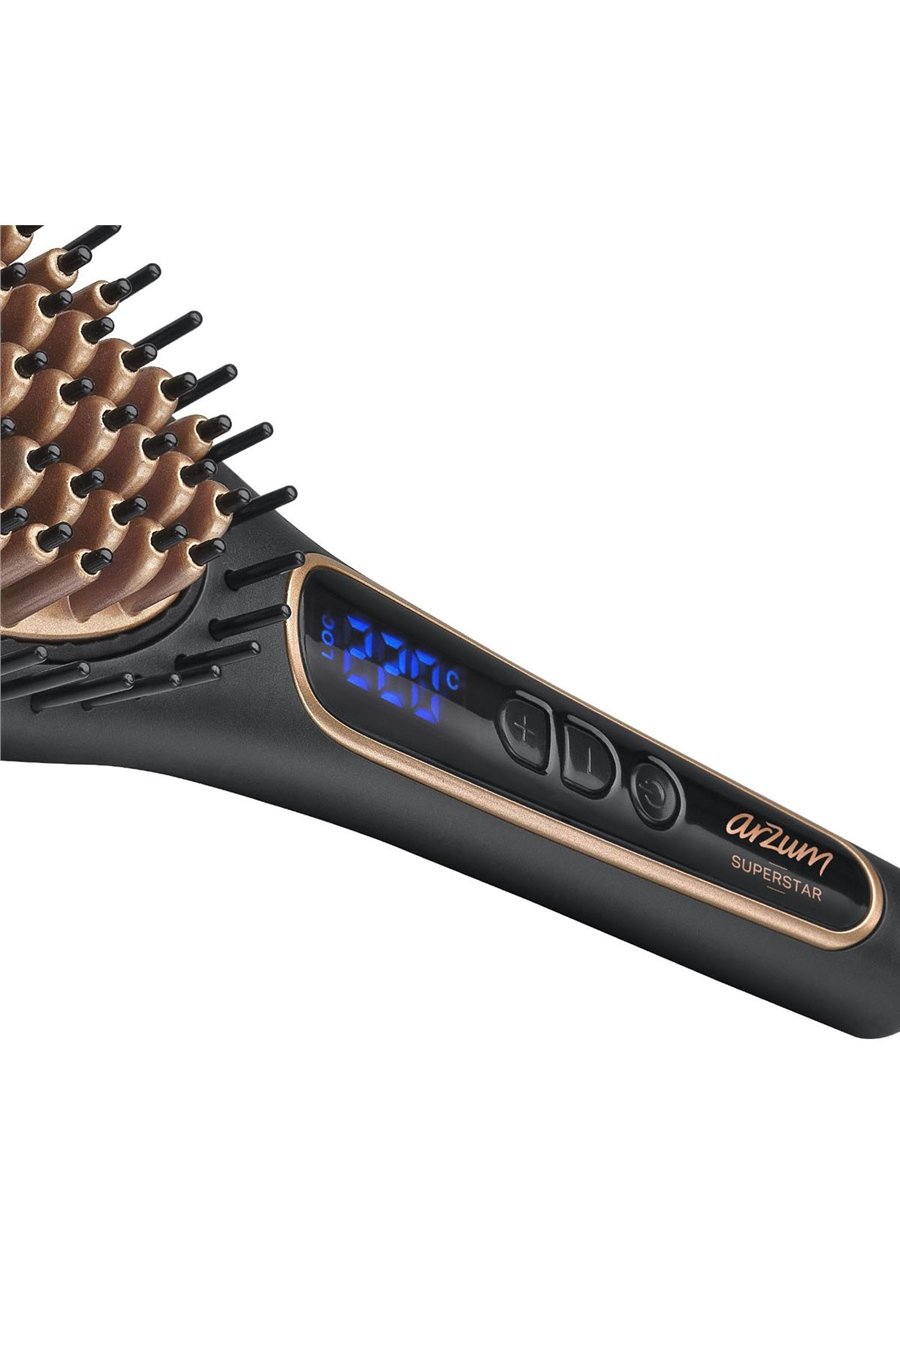 Arzum AR5036 Superstar Saç Düzleştirici Fırça Siyah